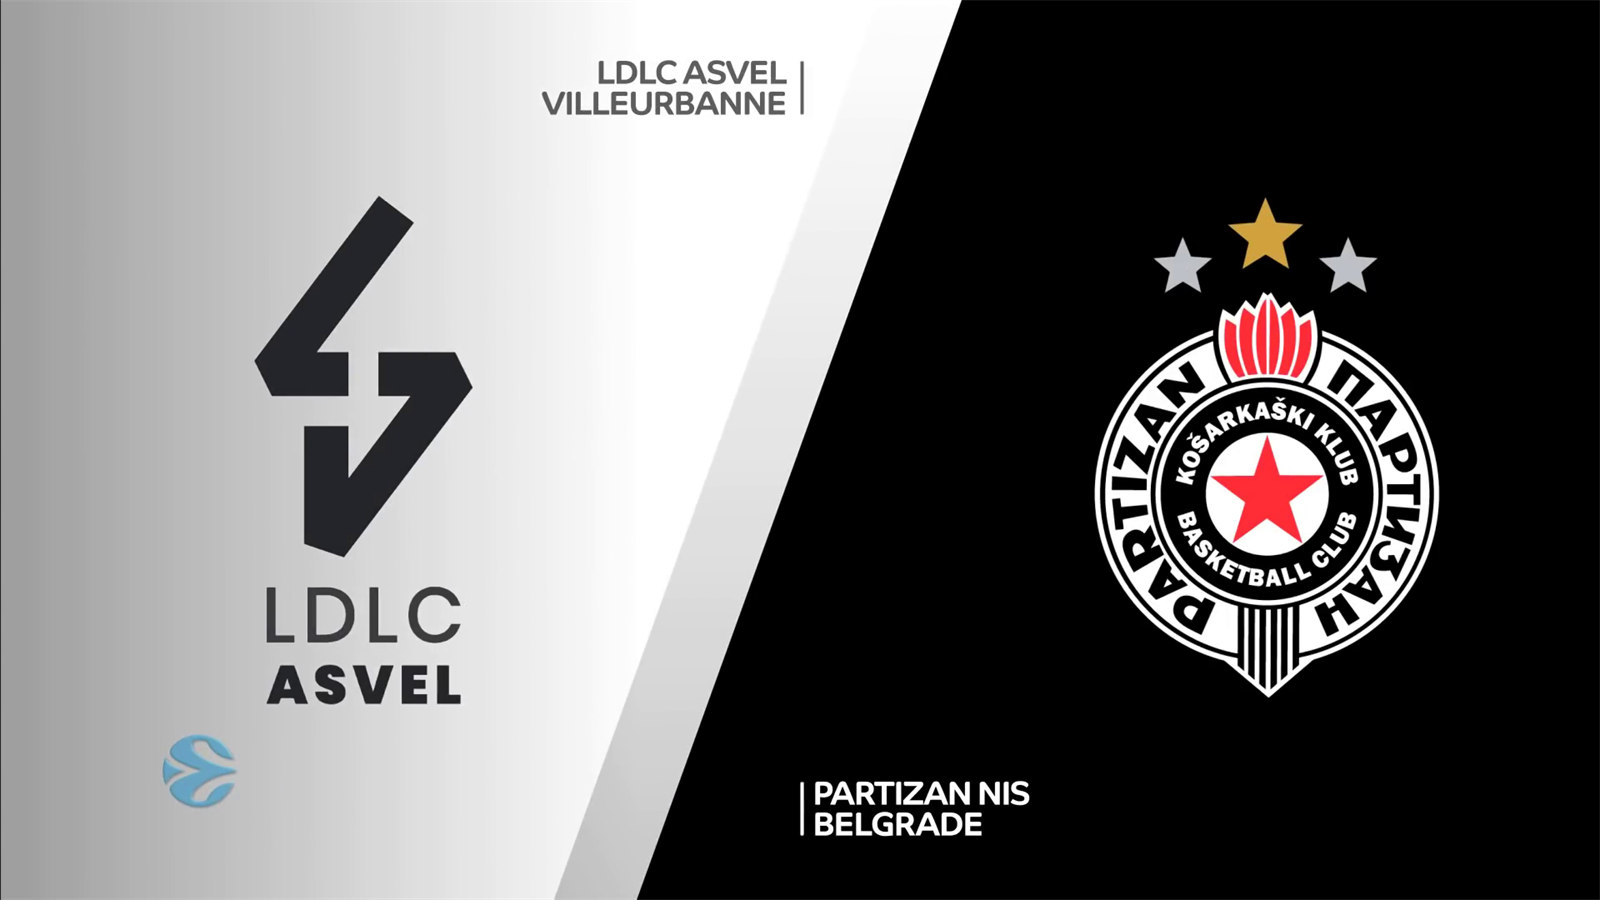 Ldlc Asvel Villeurbanne - Kk Partizan , HD Wallpaper & Backgrounds